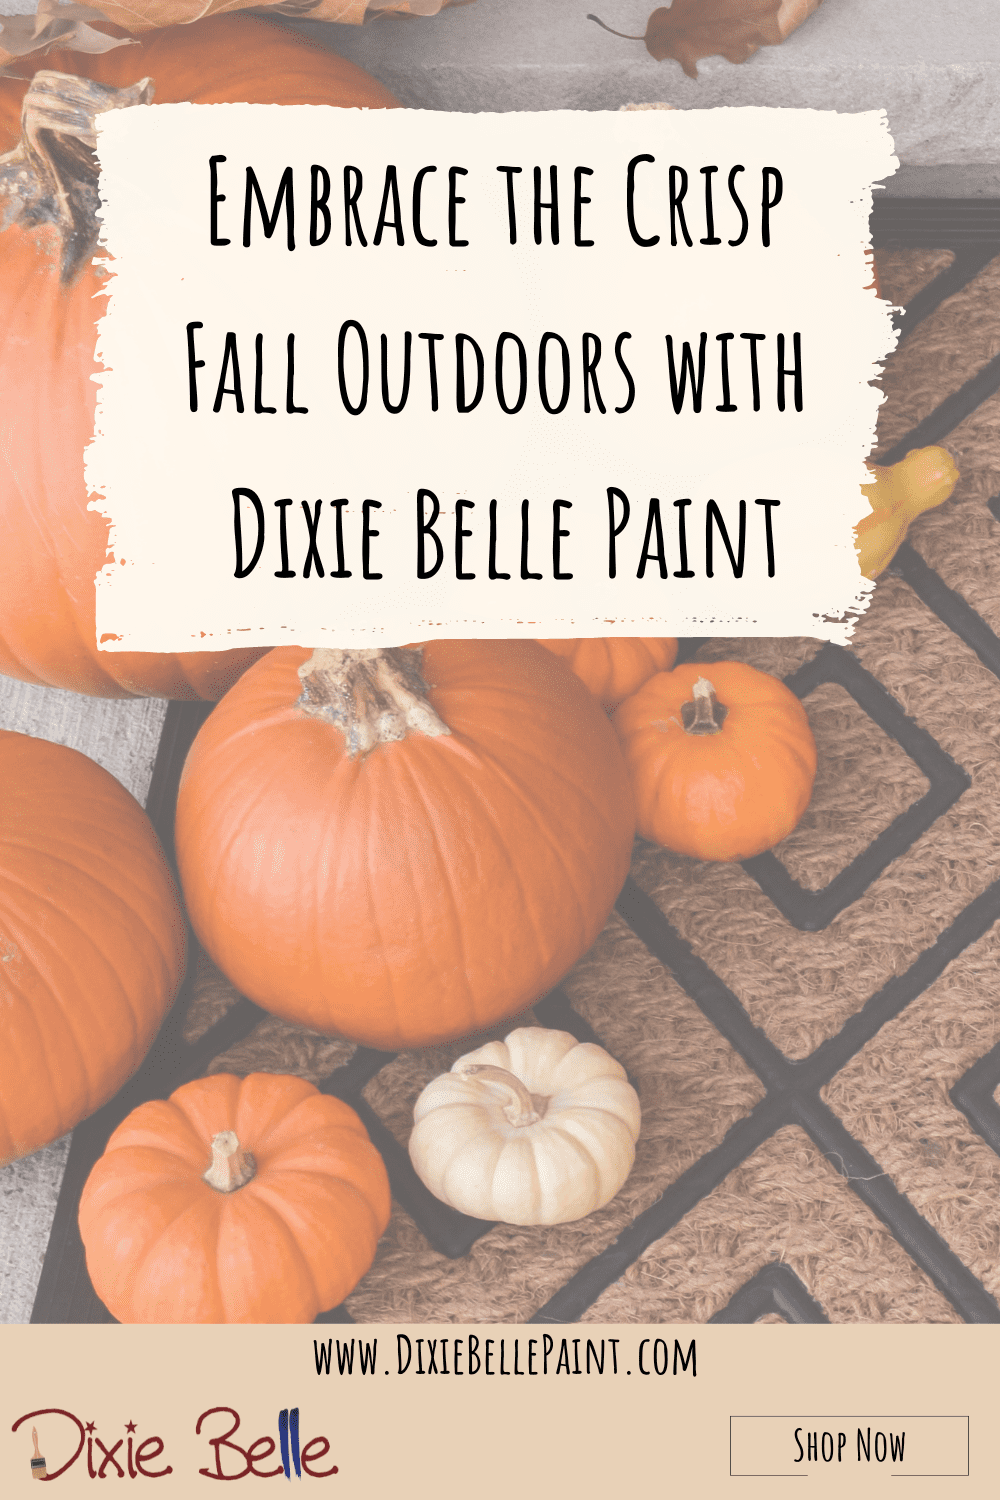 Dixie Belle Paint Blog Pinterest Image